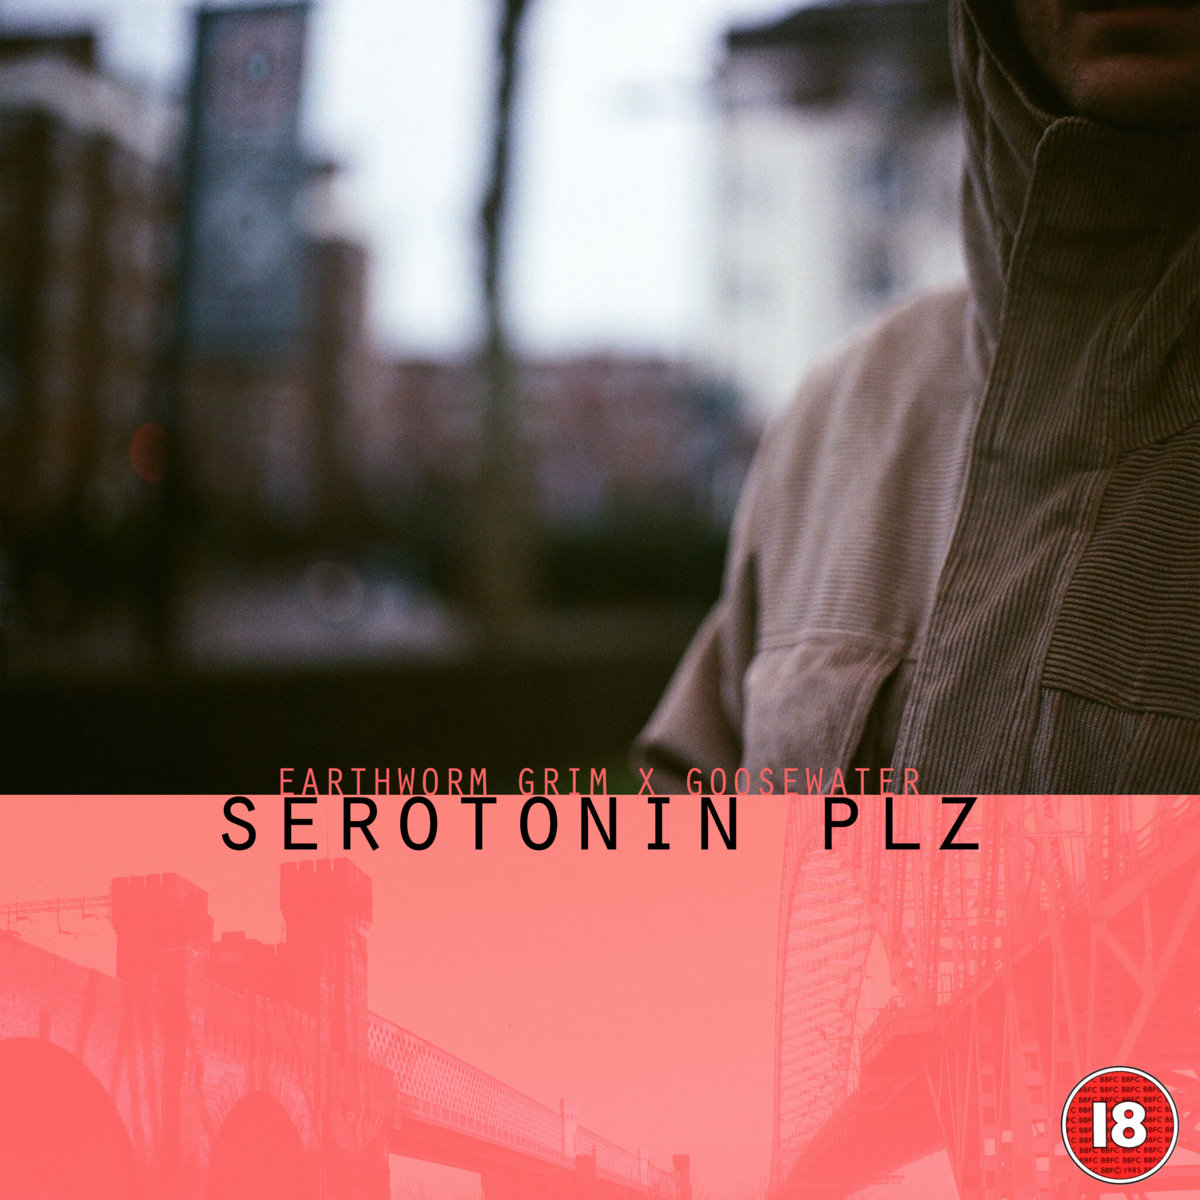 Serotonin_plz